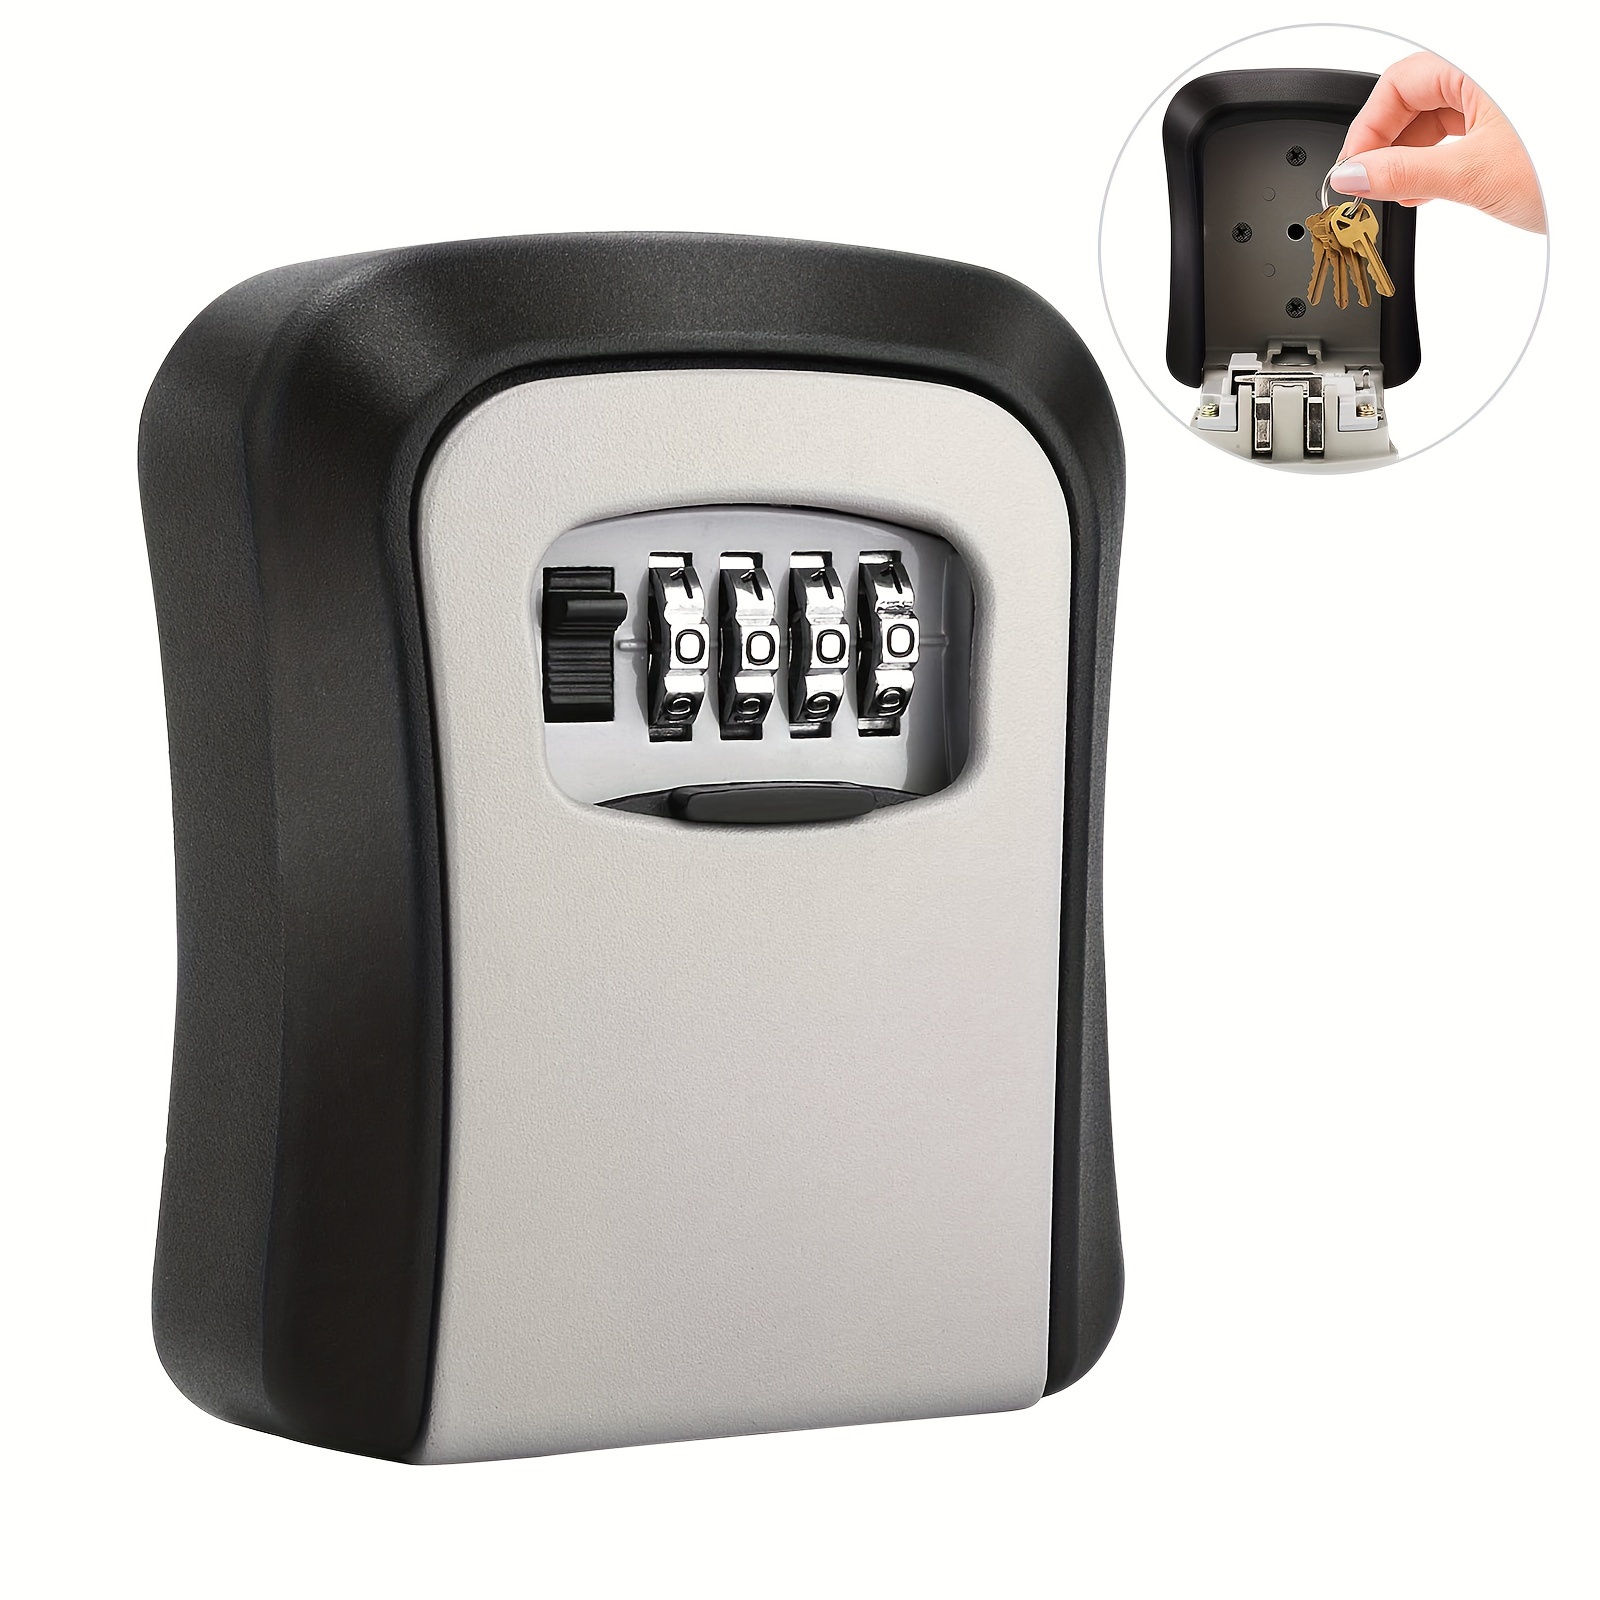 Caja de seguridad de almacenamiento de llaves, exterior al aire libre  resistente a la intemperie Ocultar montado en la pared de 4 dígitos